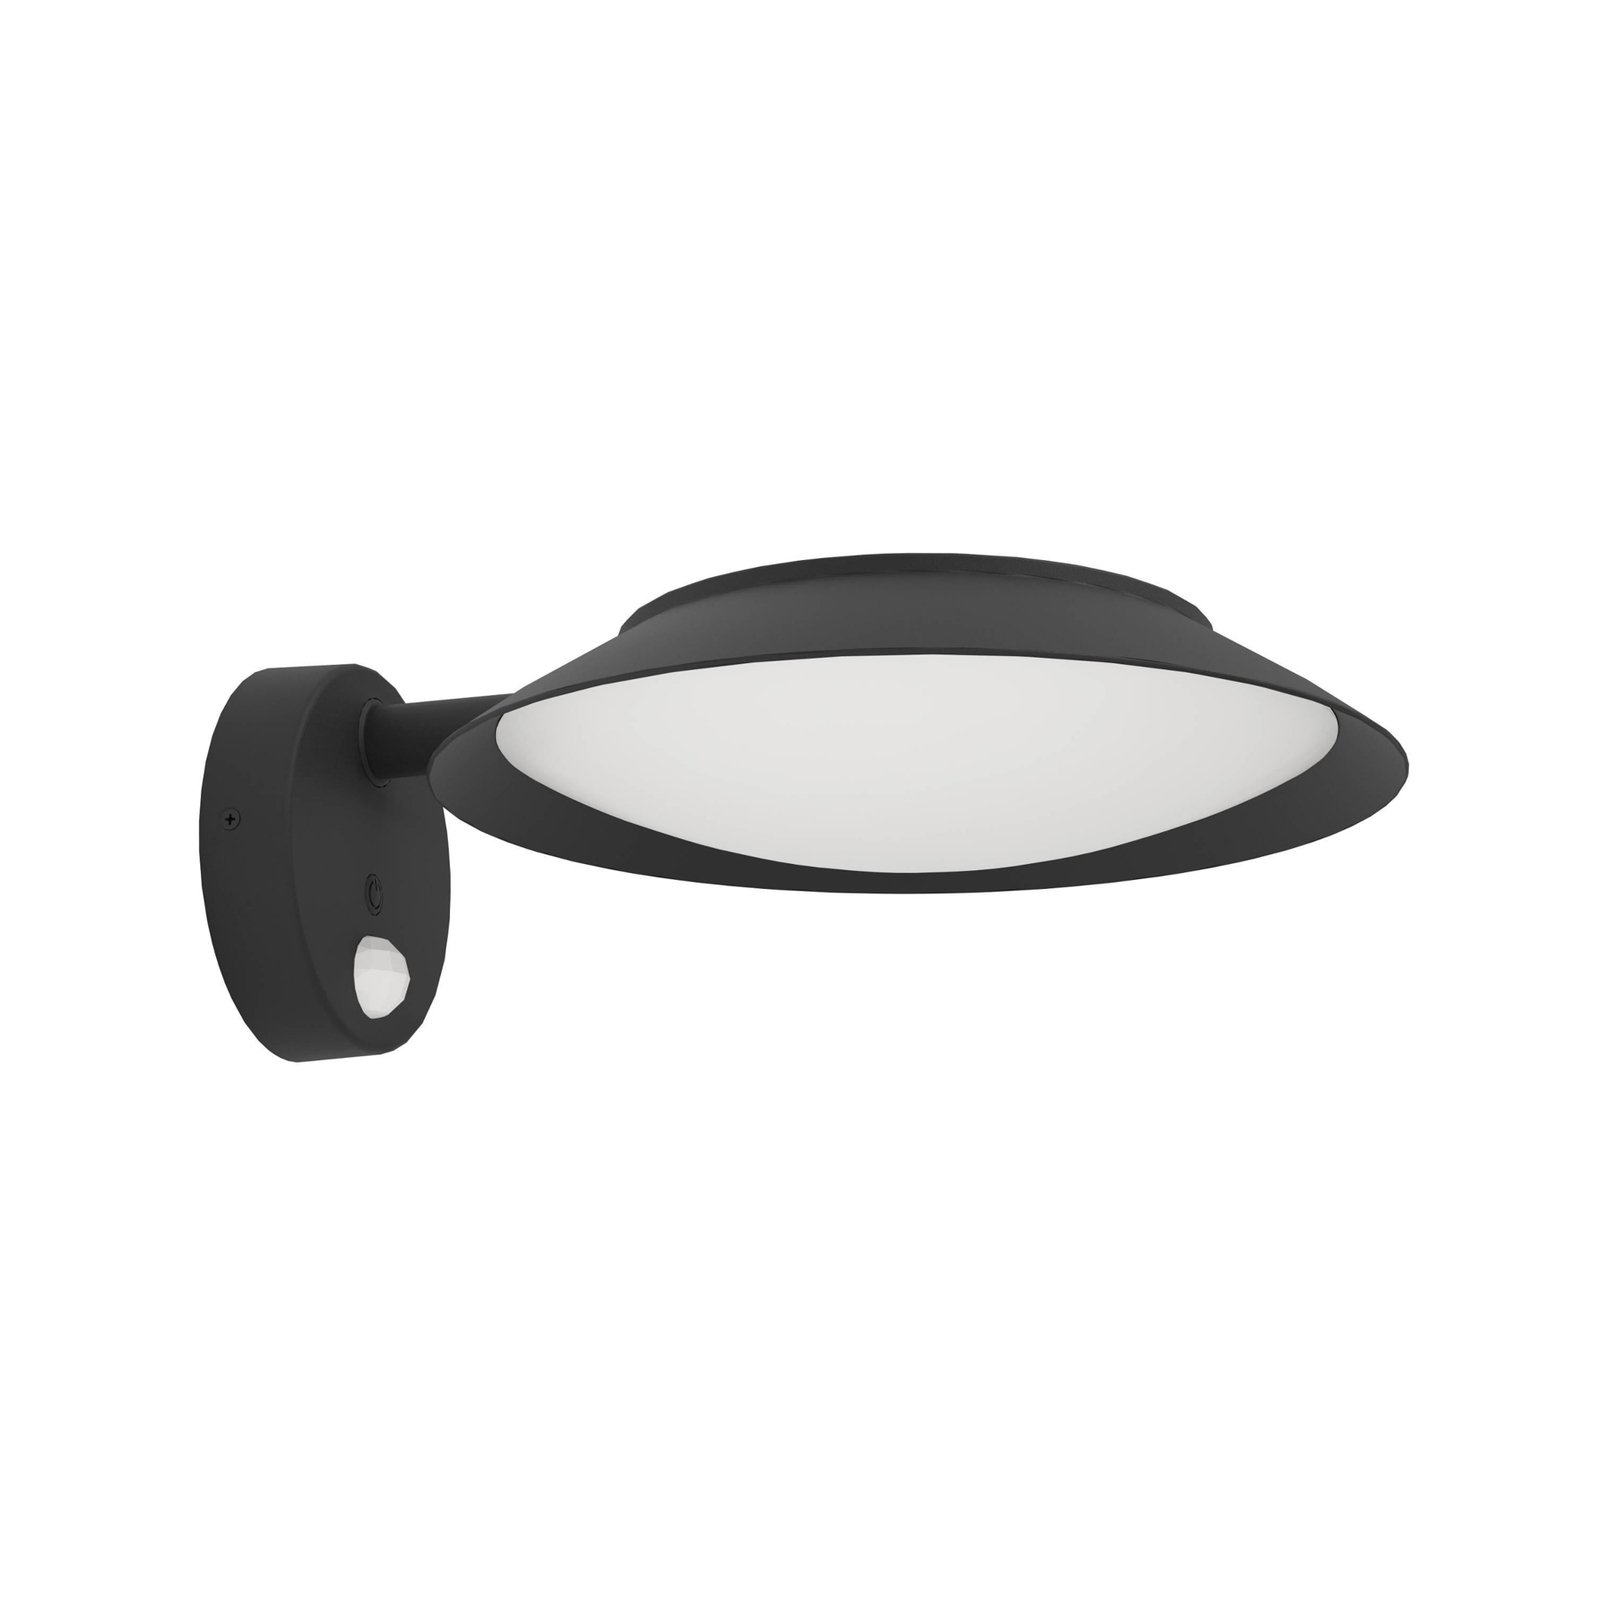 Cerrisi napelemes LED fali lámpa, szélesség 10,5 cm, fekete, érzékelő